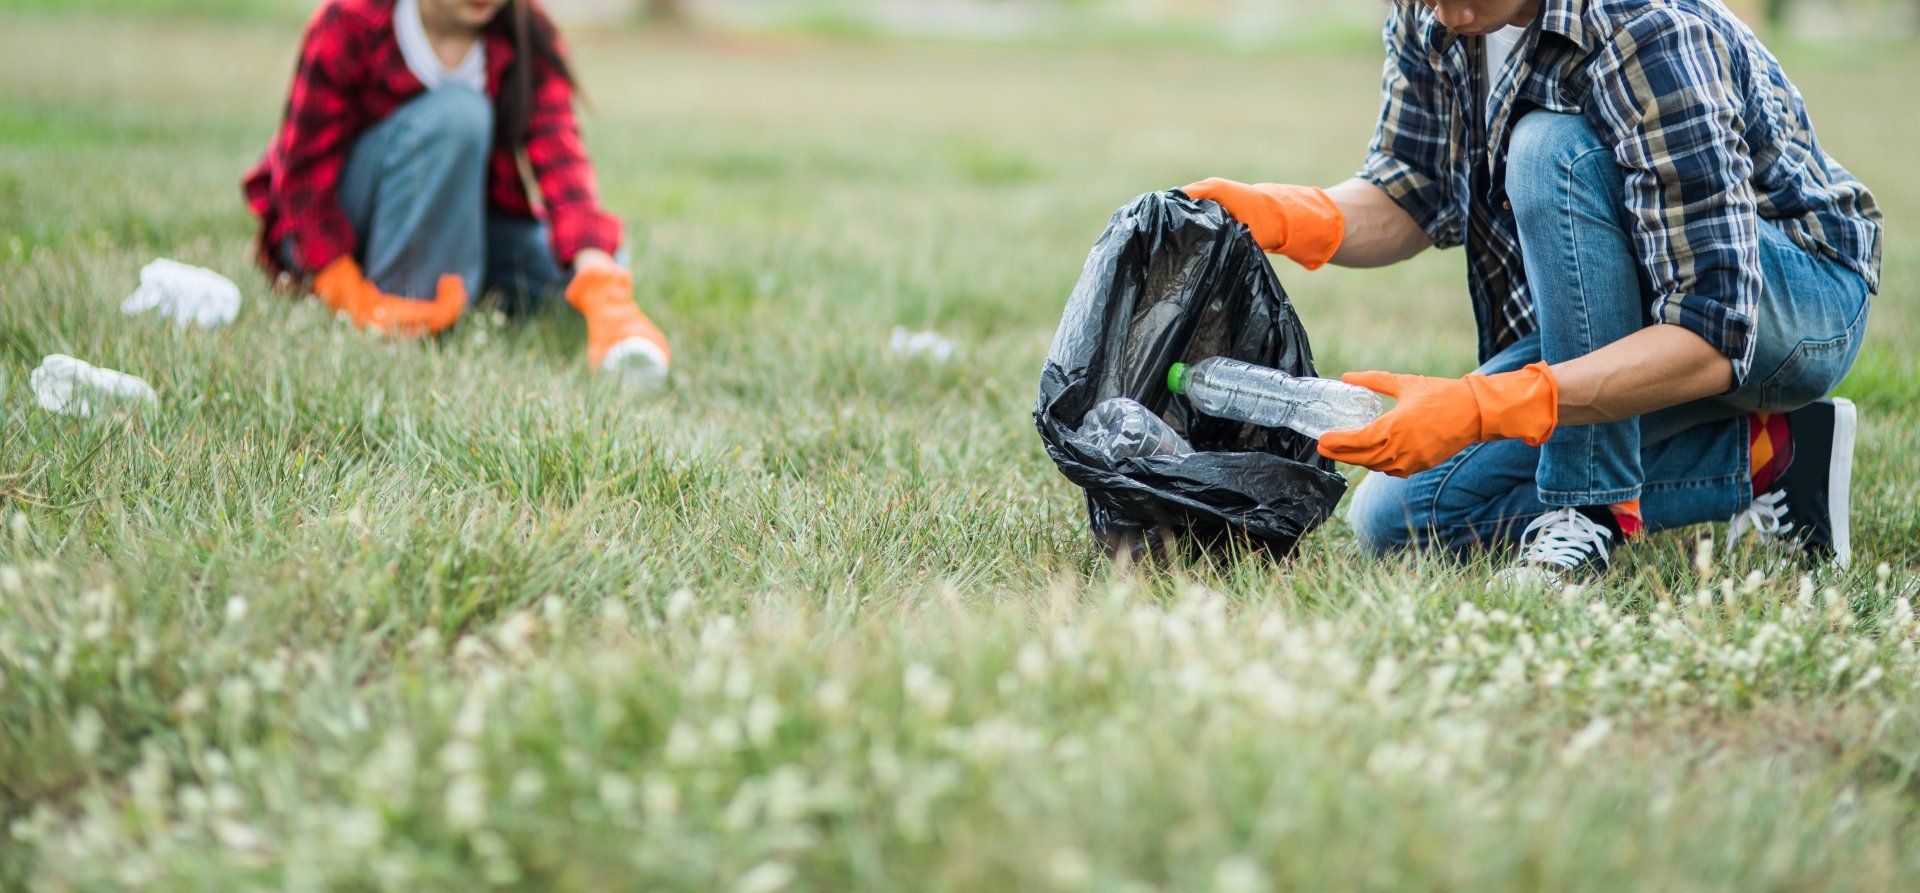 Voluntarios recolectando basura de plástico en el pasto compromiso ambiental